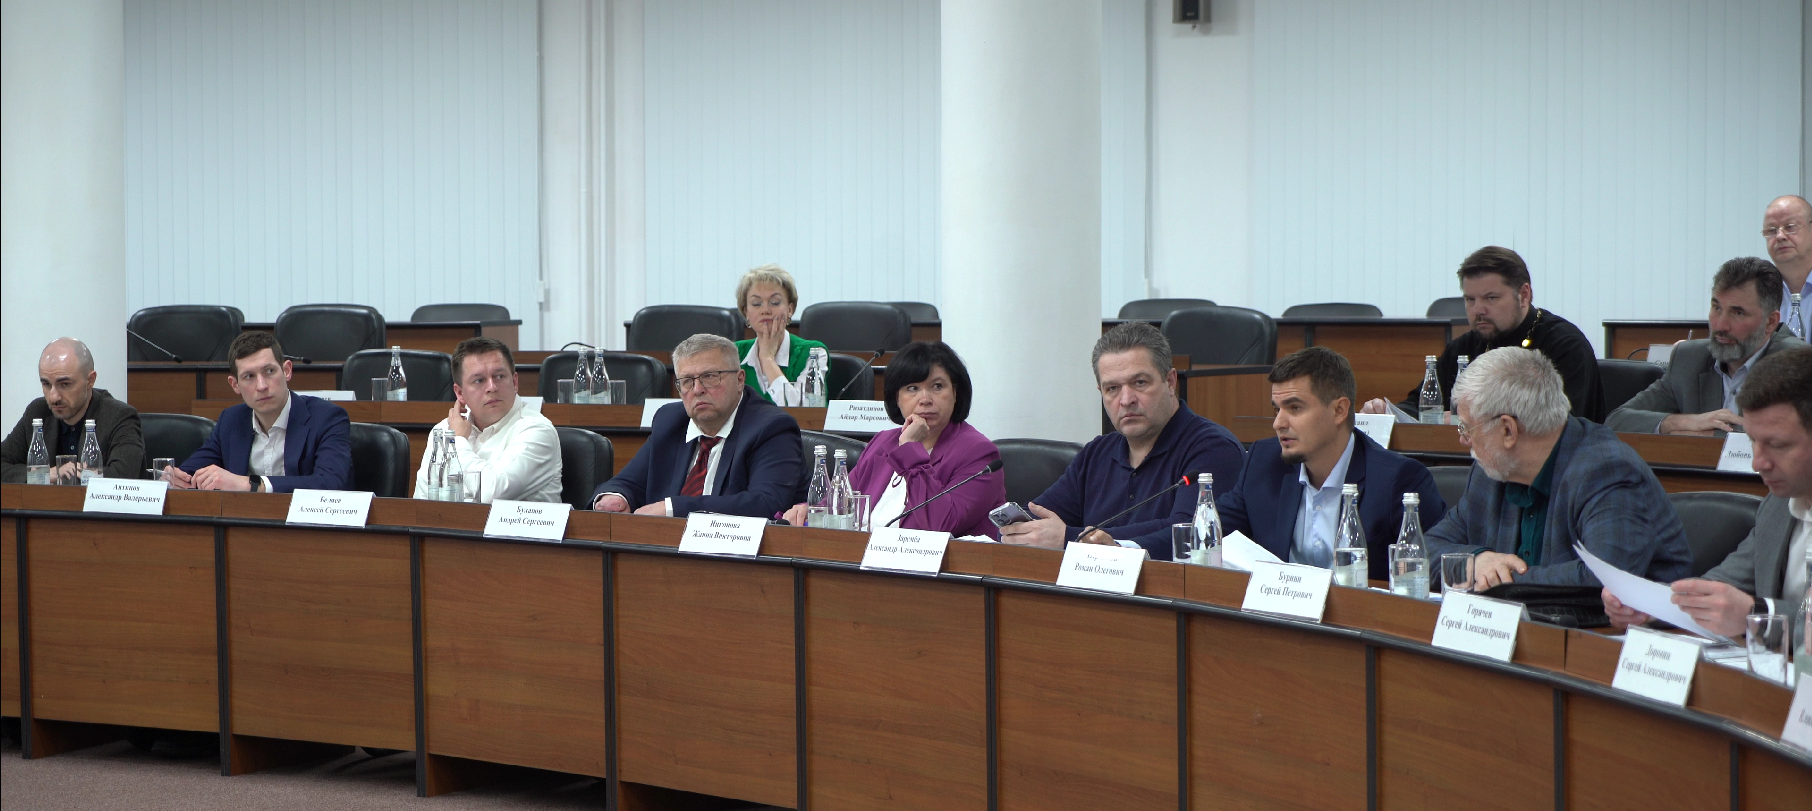 Второе заседание Общественной палаты Нижнего Новгорода